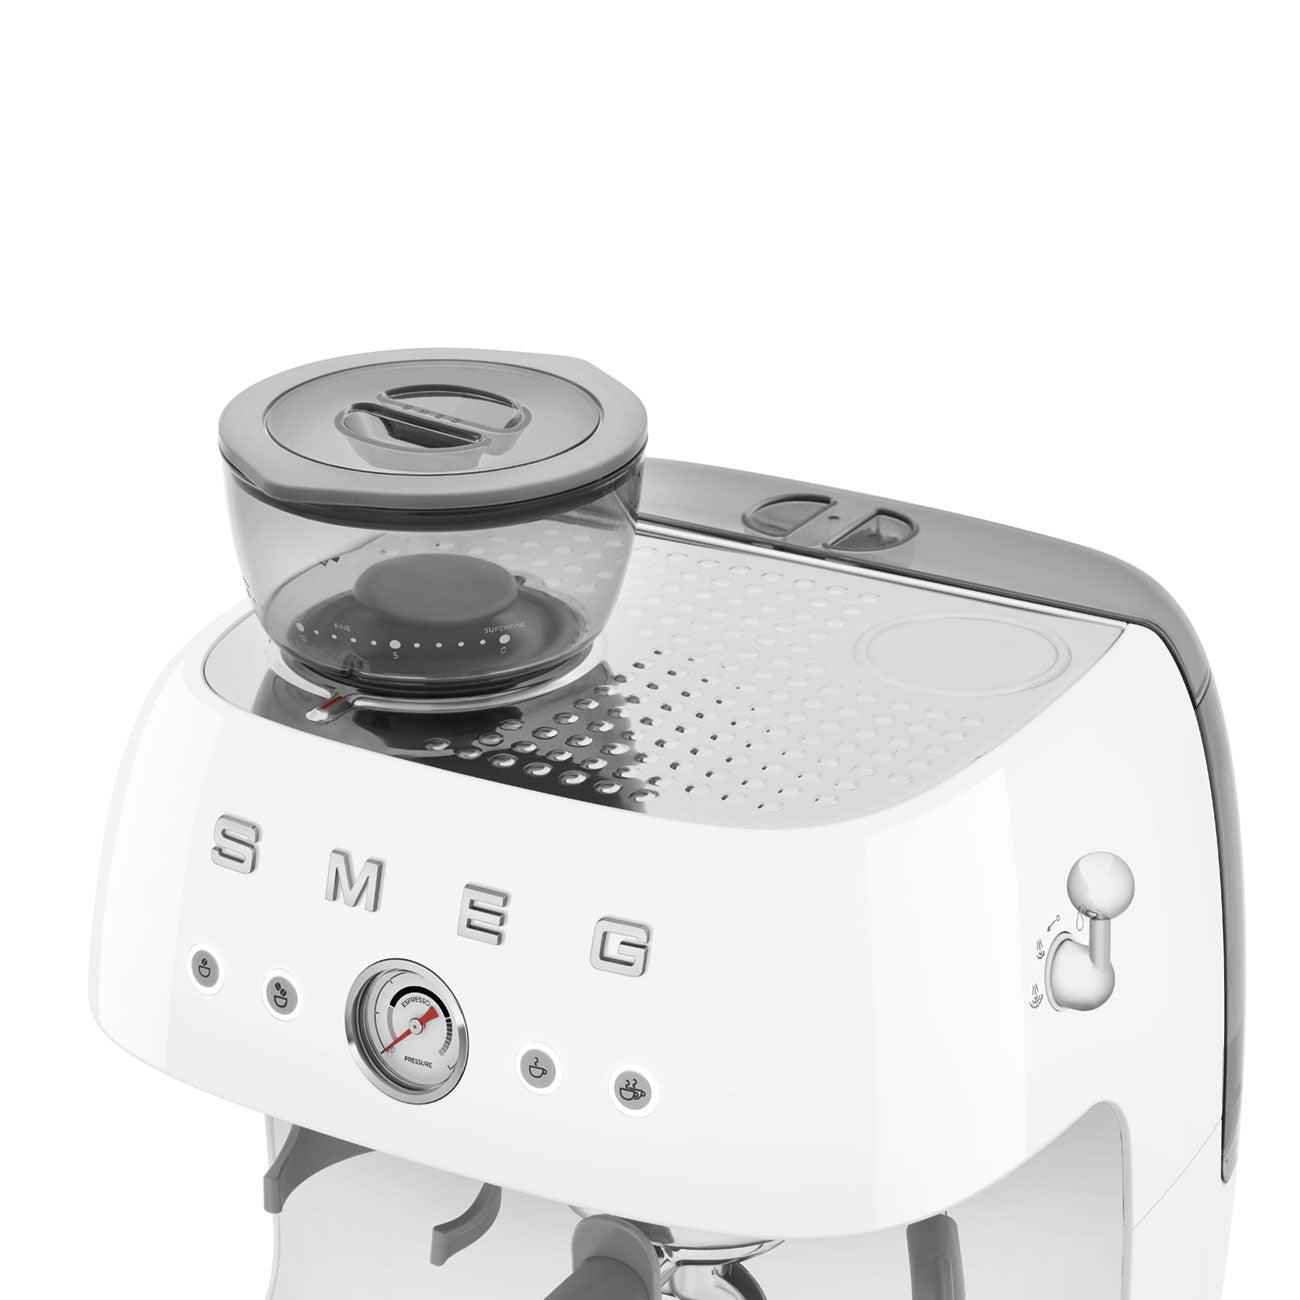 EGF03WHEU SMEG Espressomaschine Weiß